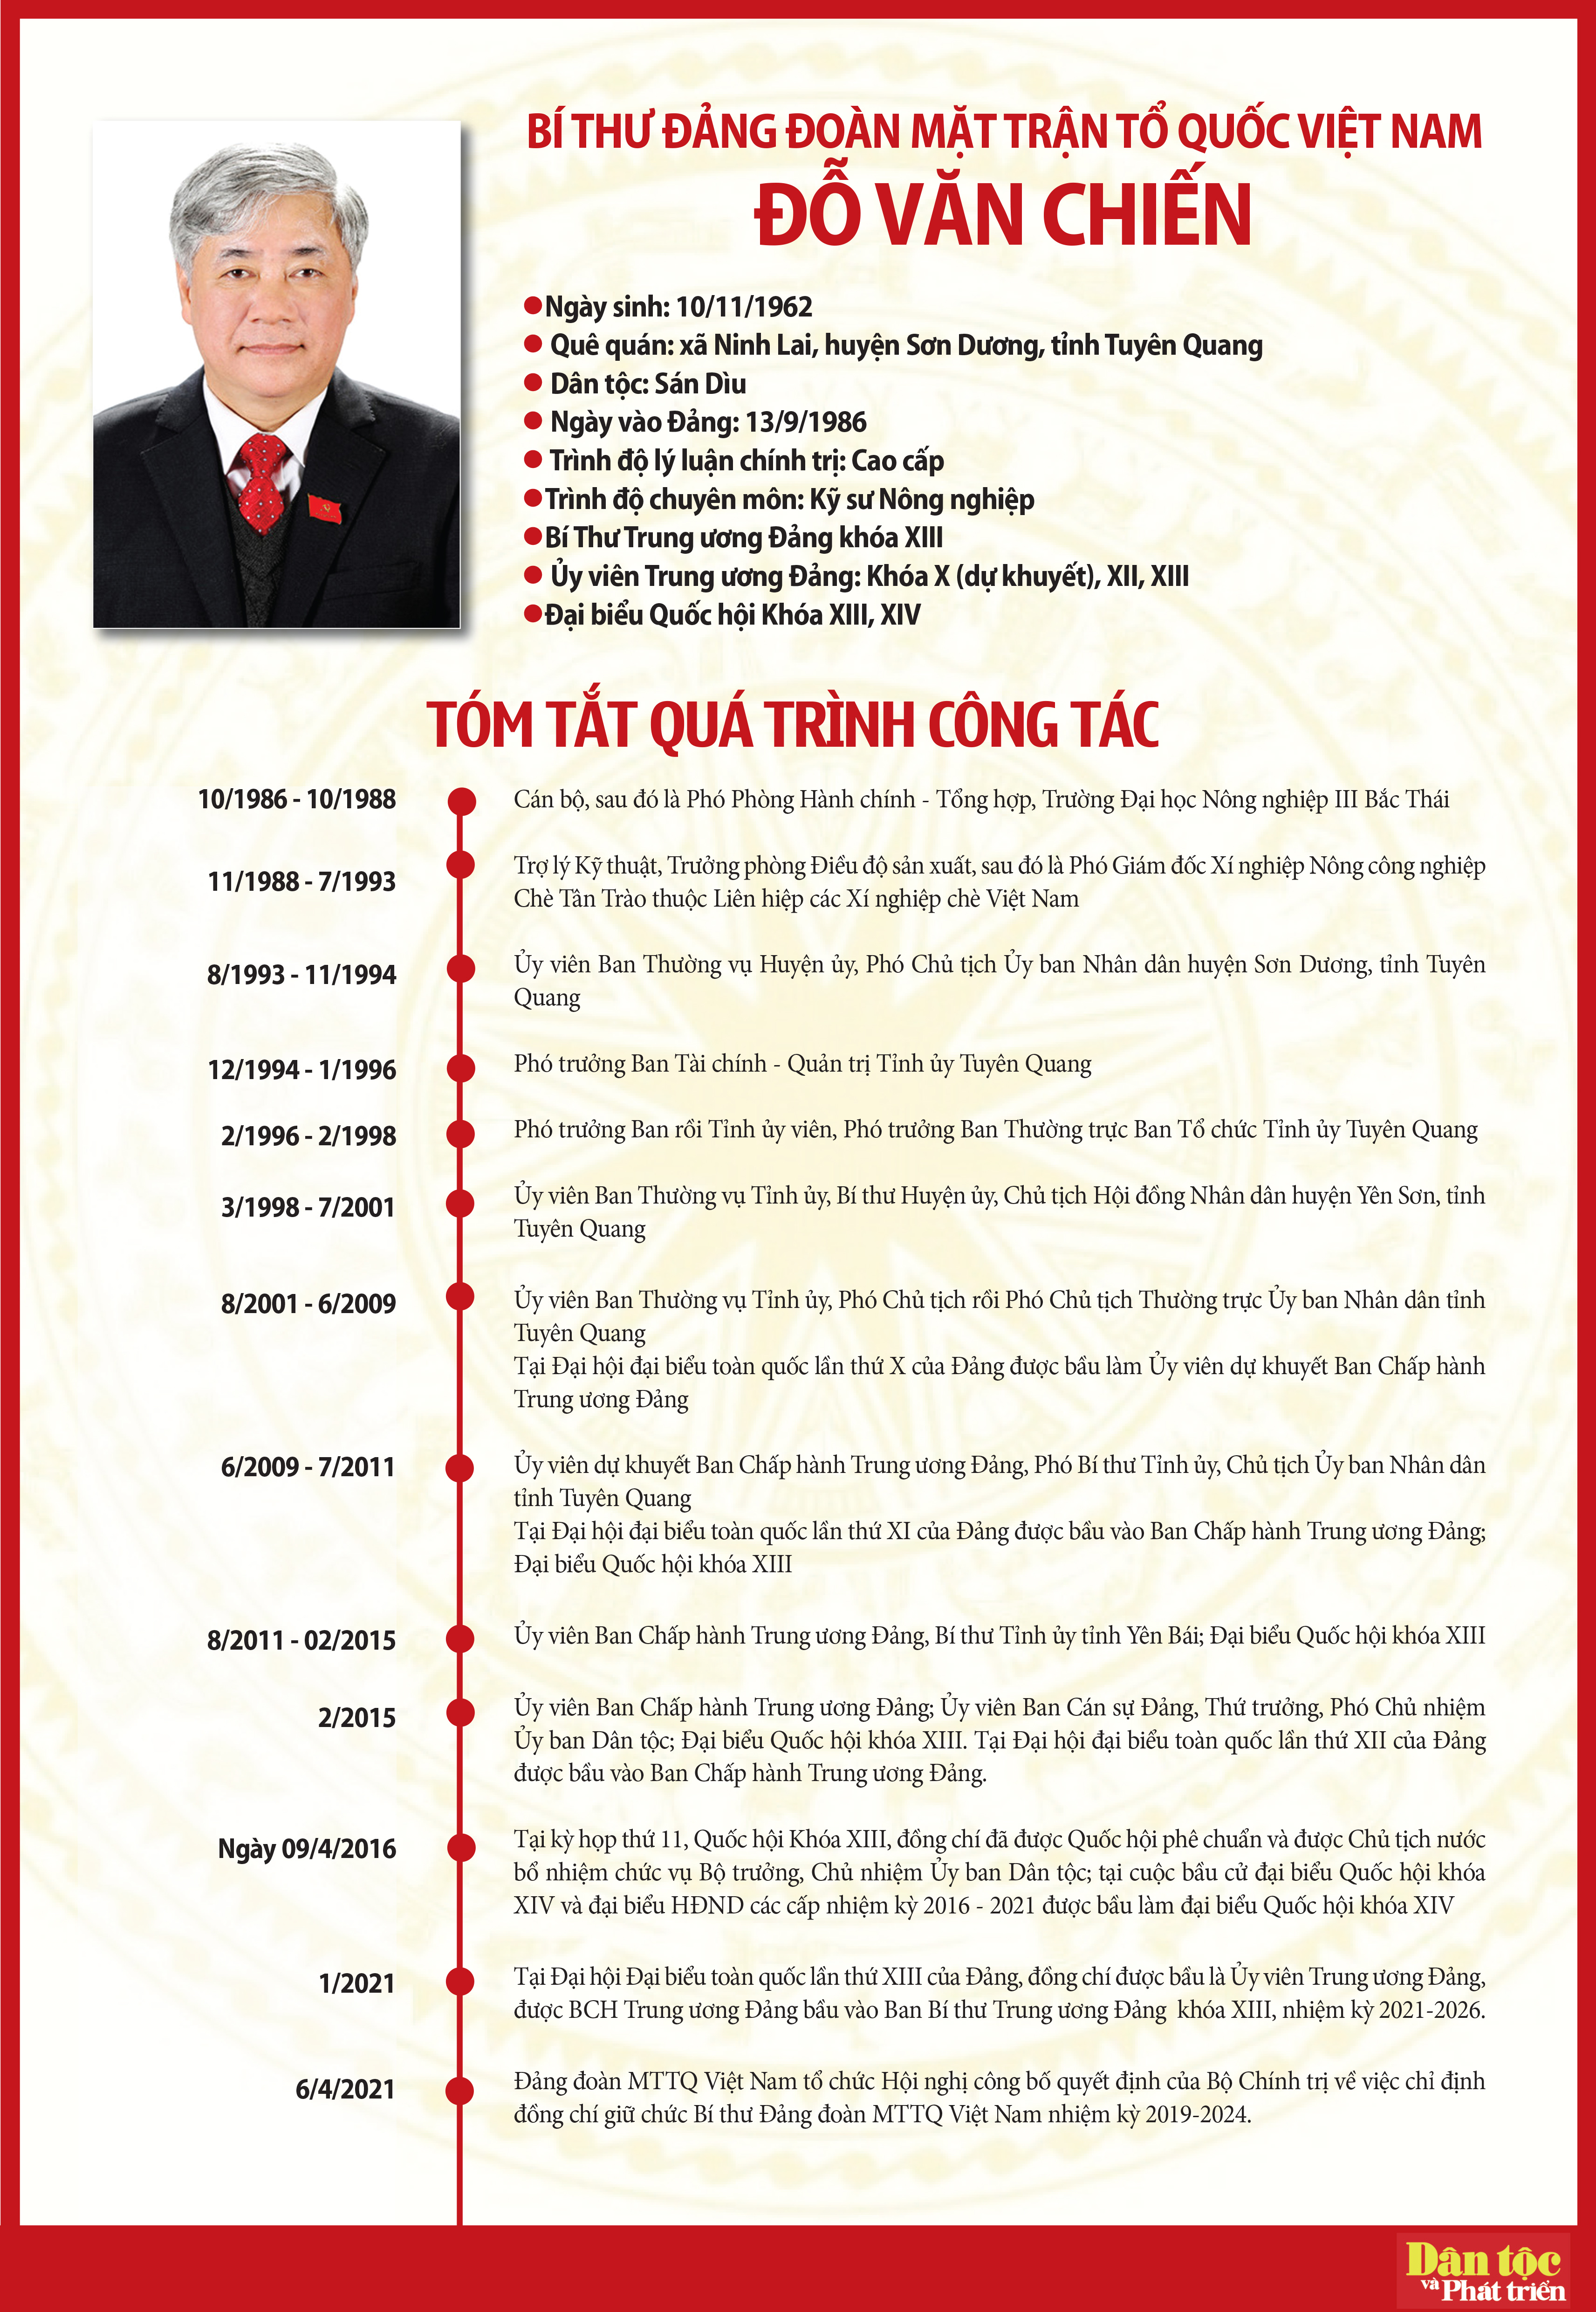 Bộ Chính trị chỉ định đồng chí Đỗ Văn Chiến giữ chức Bí thư Đảng đoàn MTTQ Việt Nam nhiệm kỳ 2019-2024 3